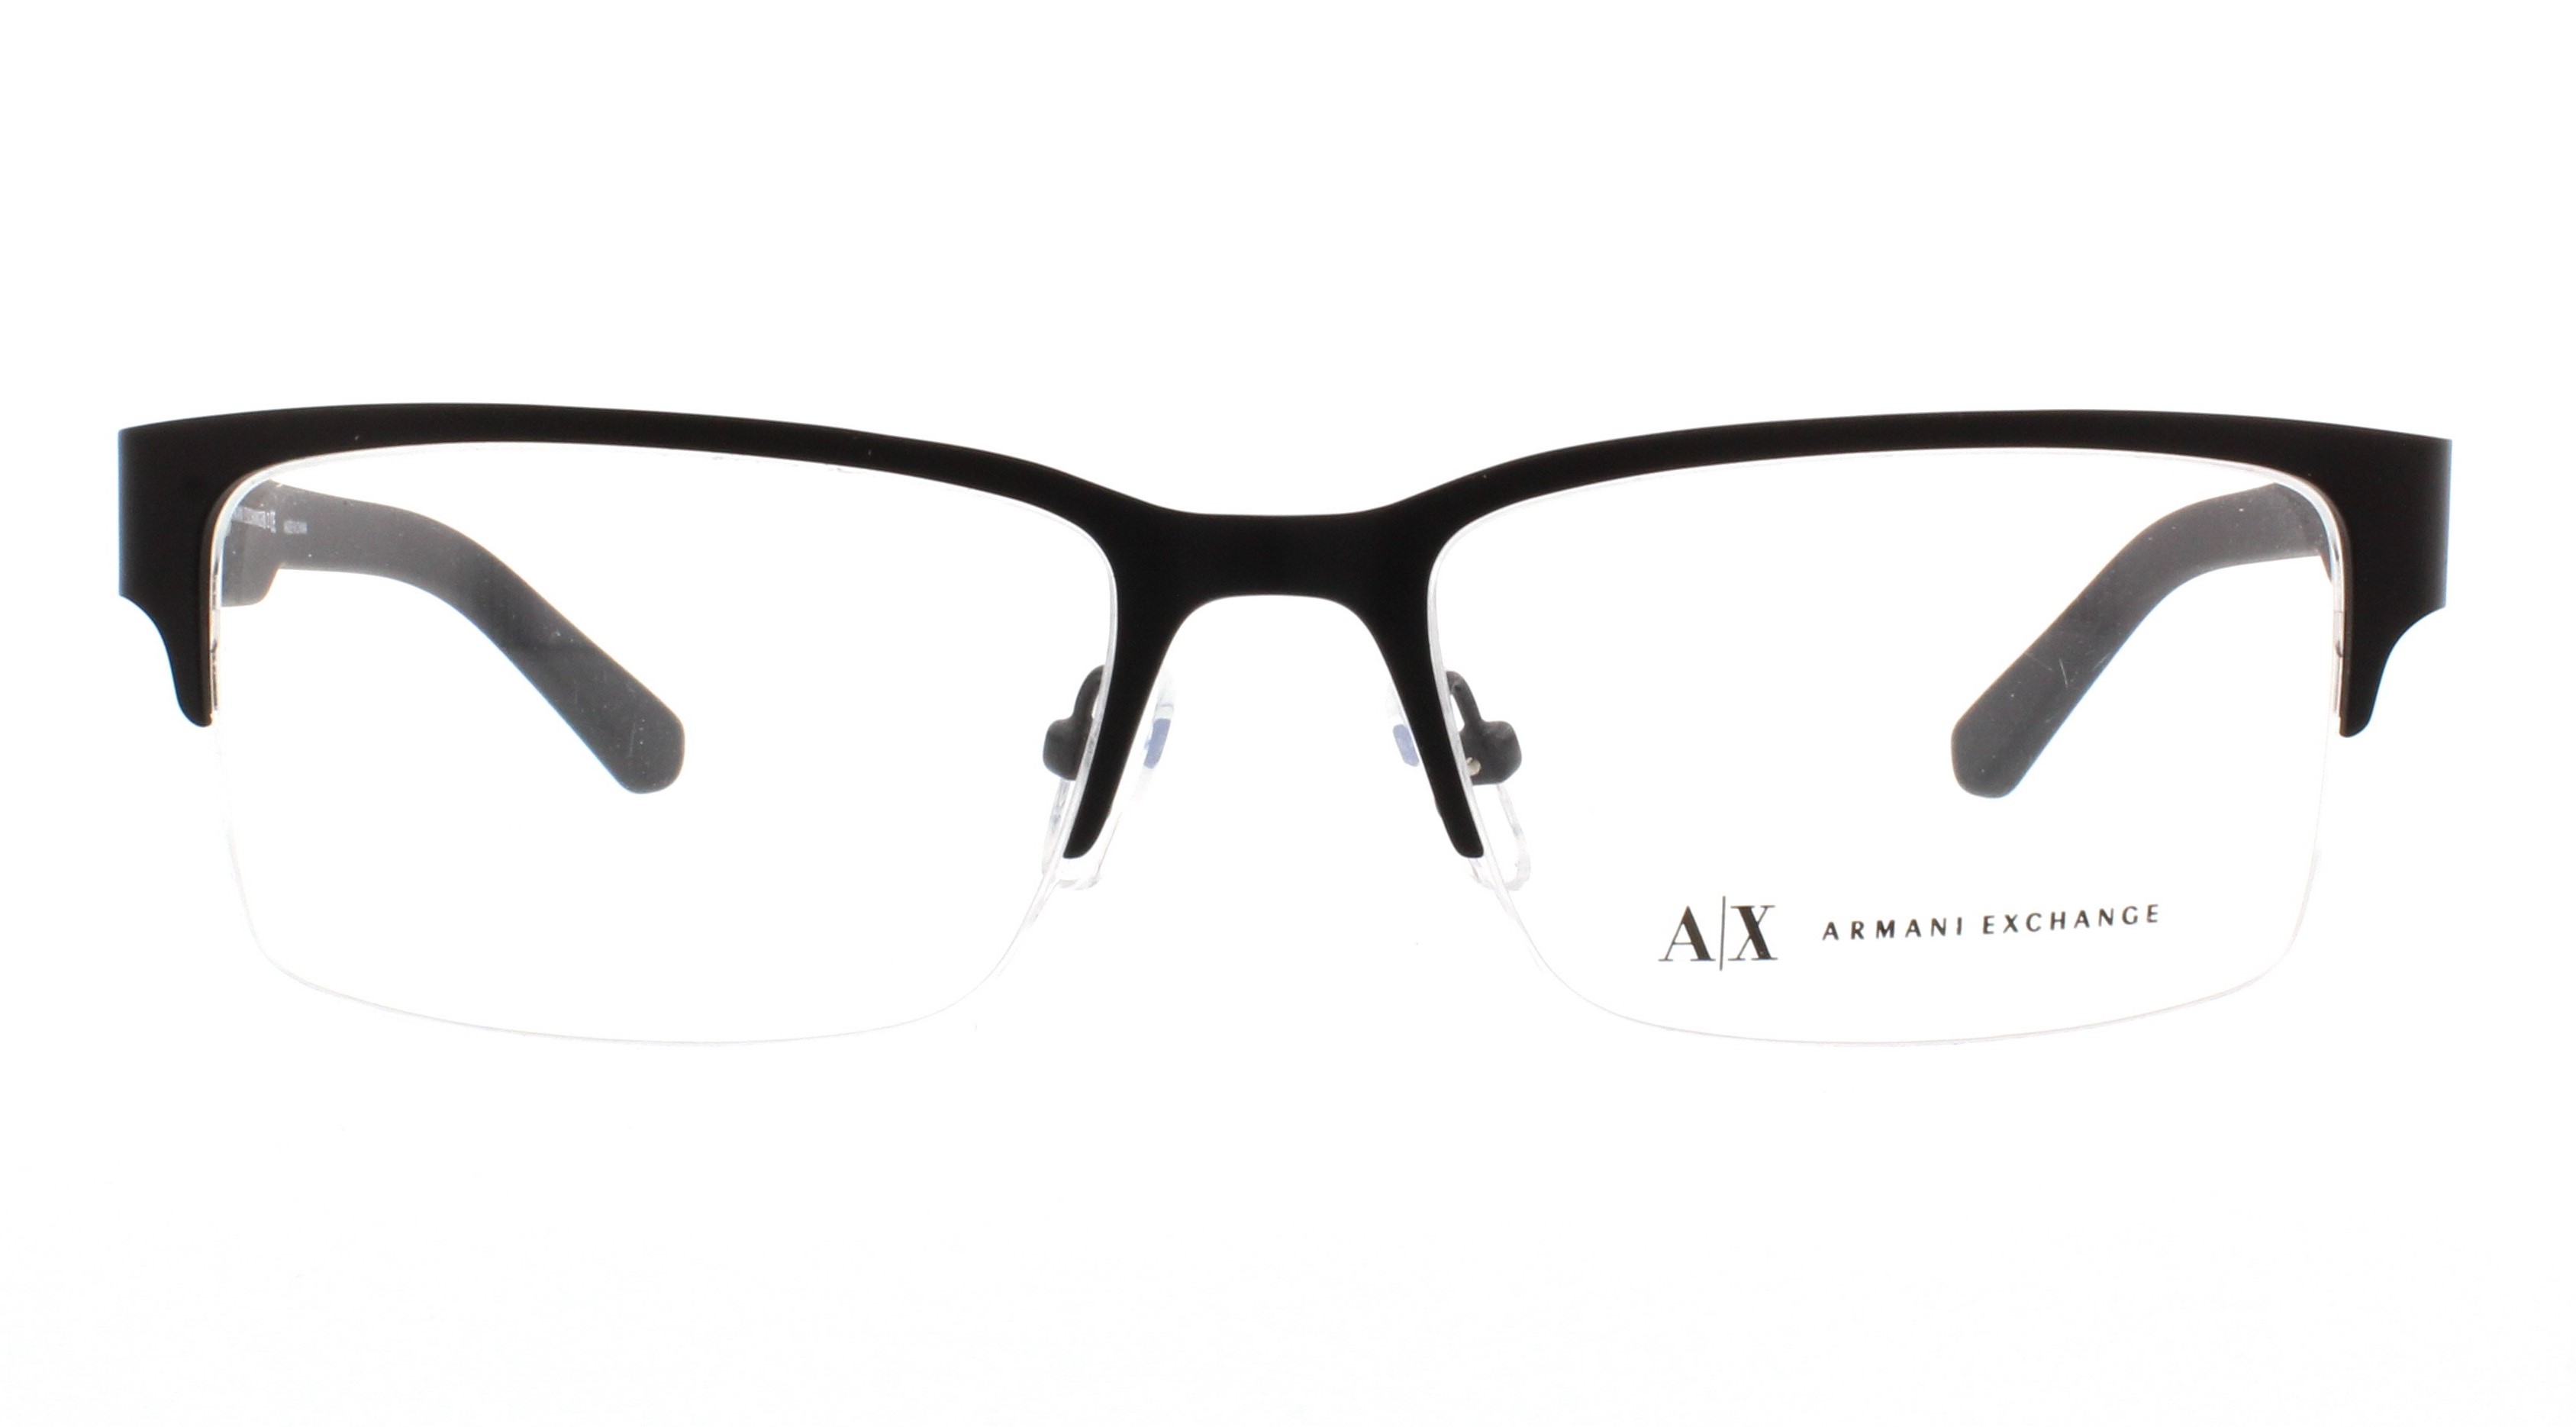 Designer AX1014 Outlet. Exchange Armani Frames Eyeglasses